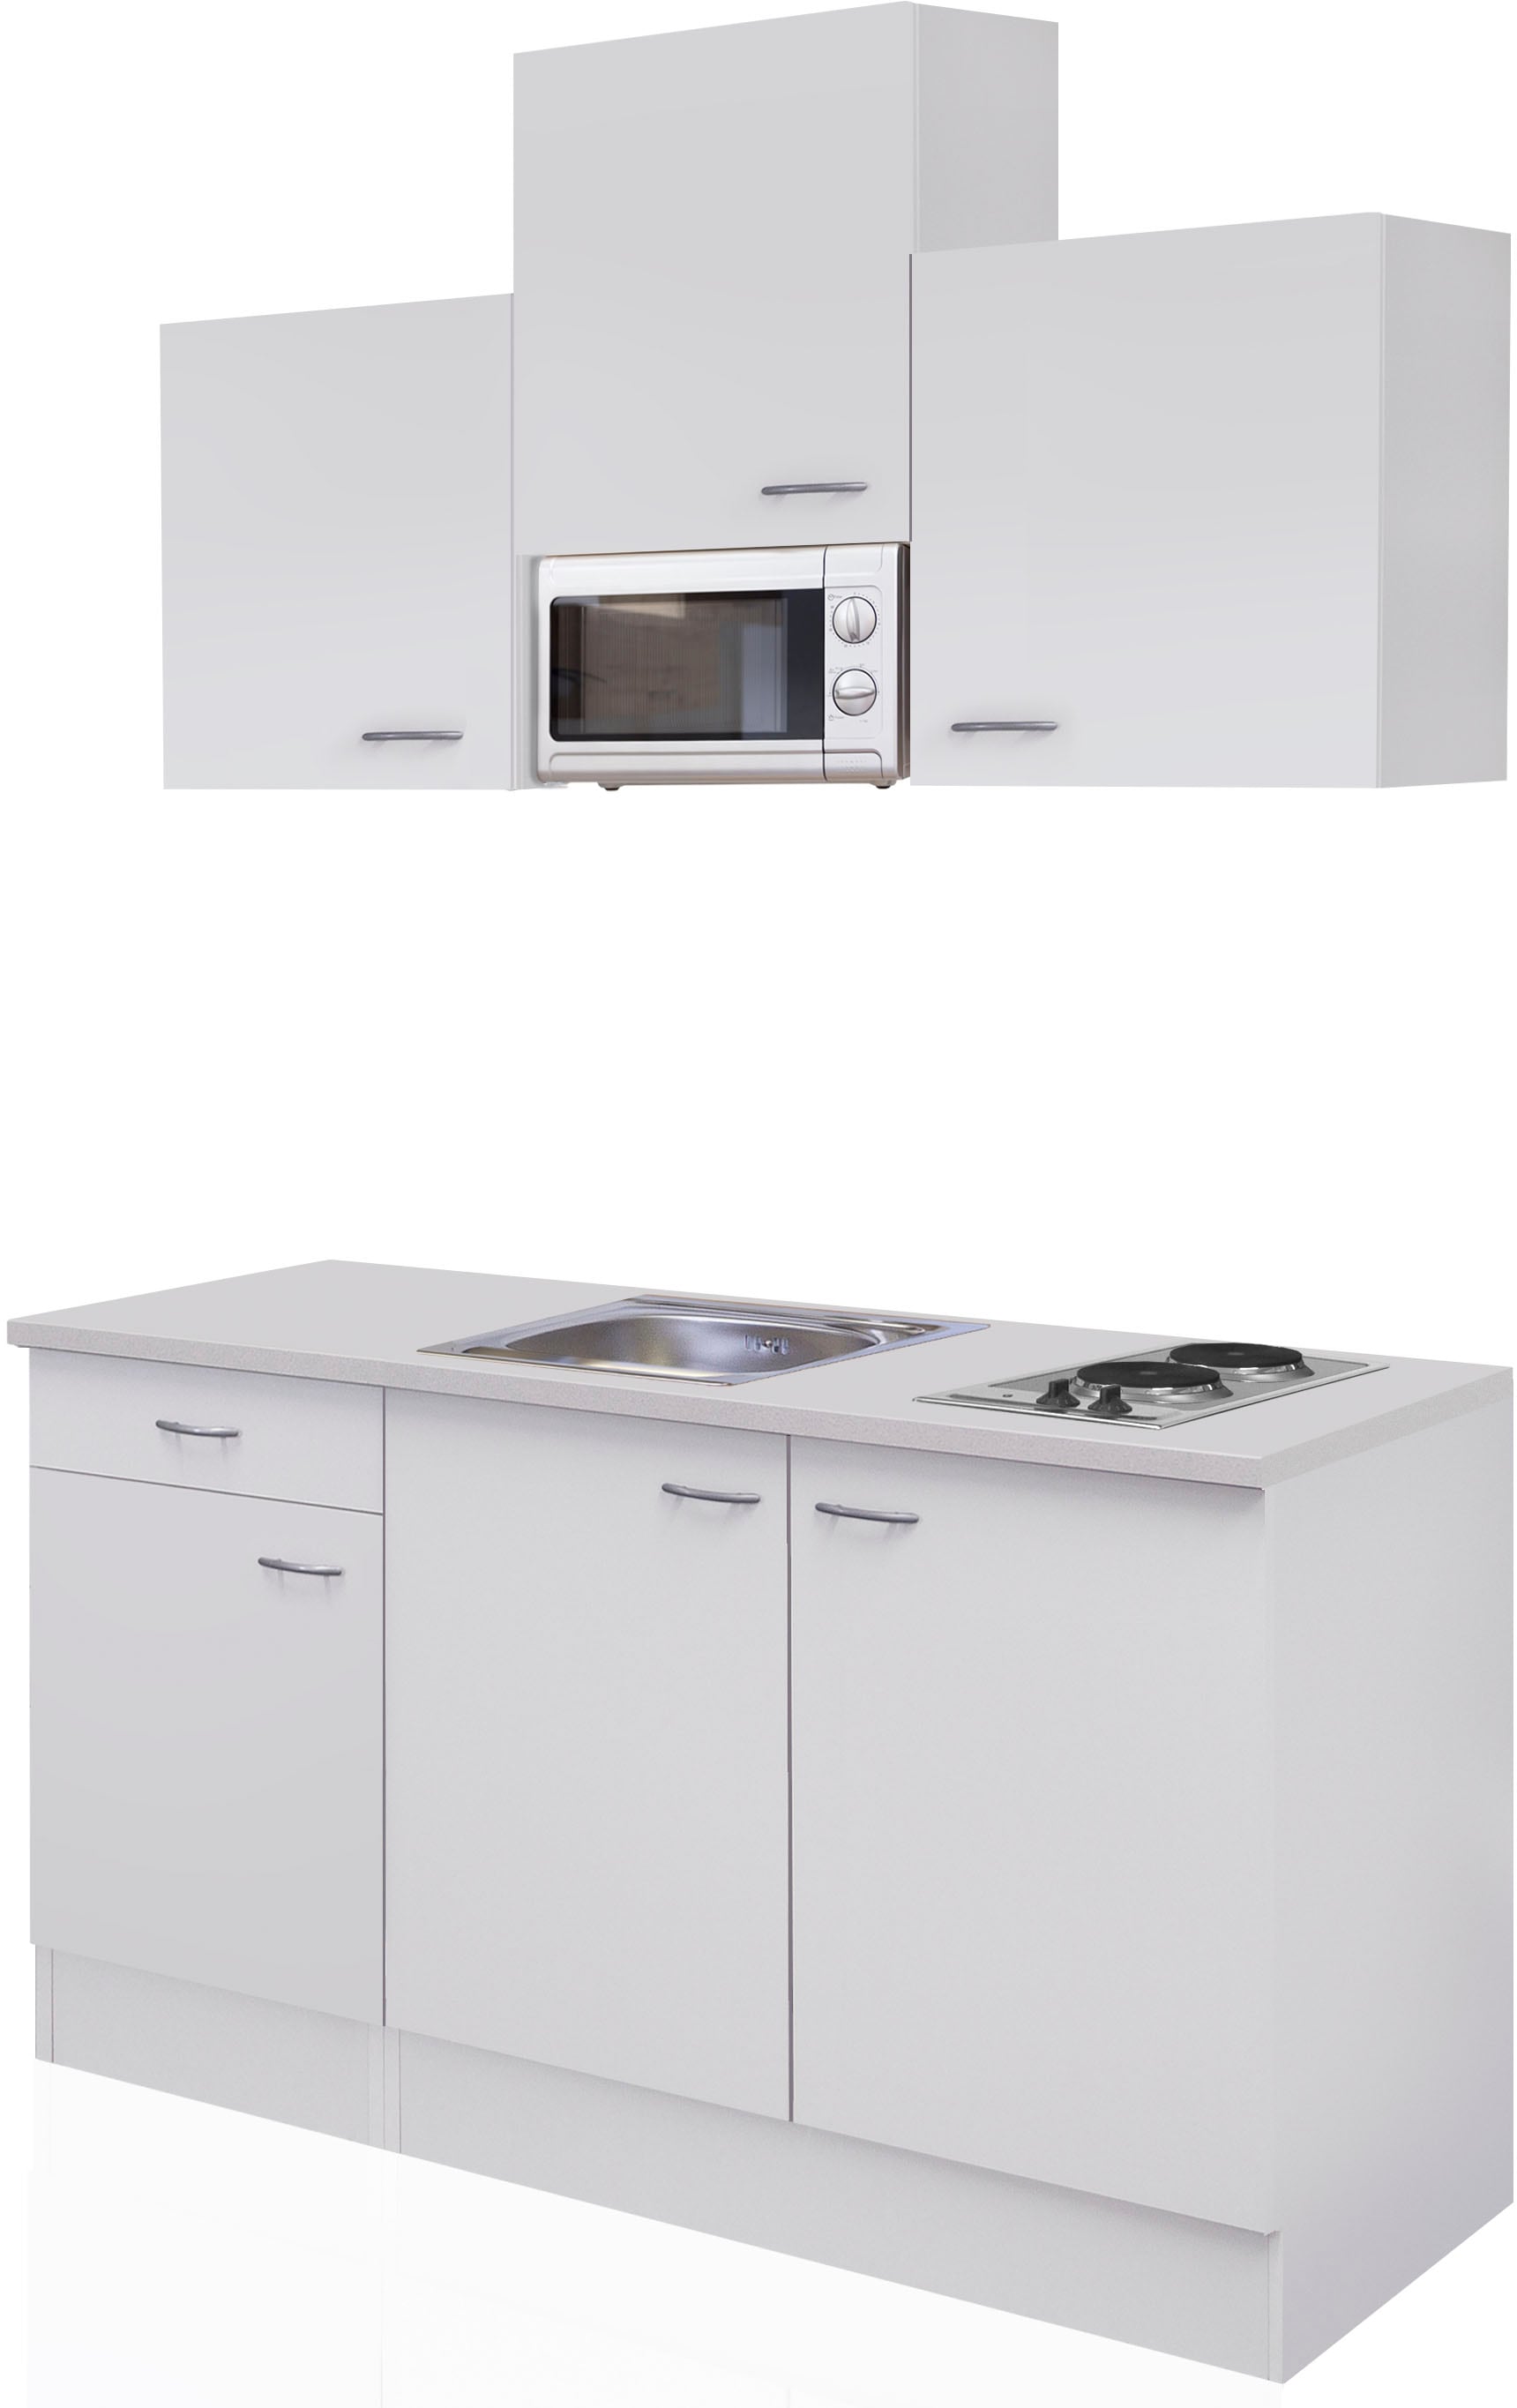 Flex-Well Küche "Wito", Gesamtbreite 150cm, mit Mikrowelle und Kochfeld, viele Farbenvarianten